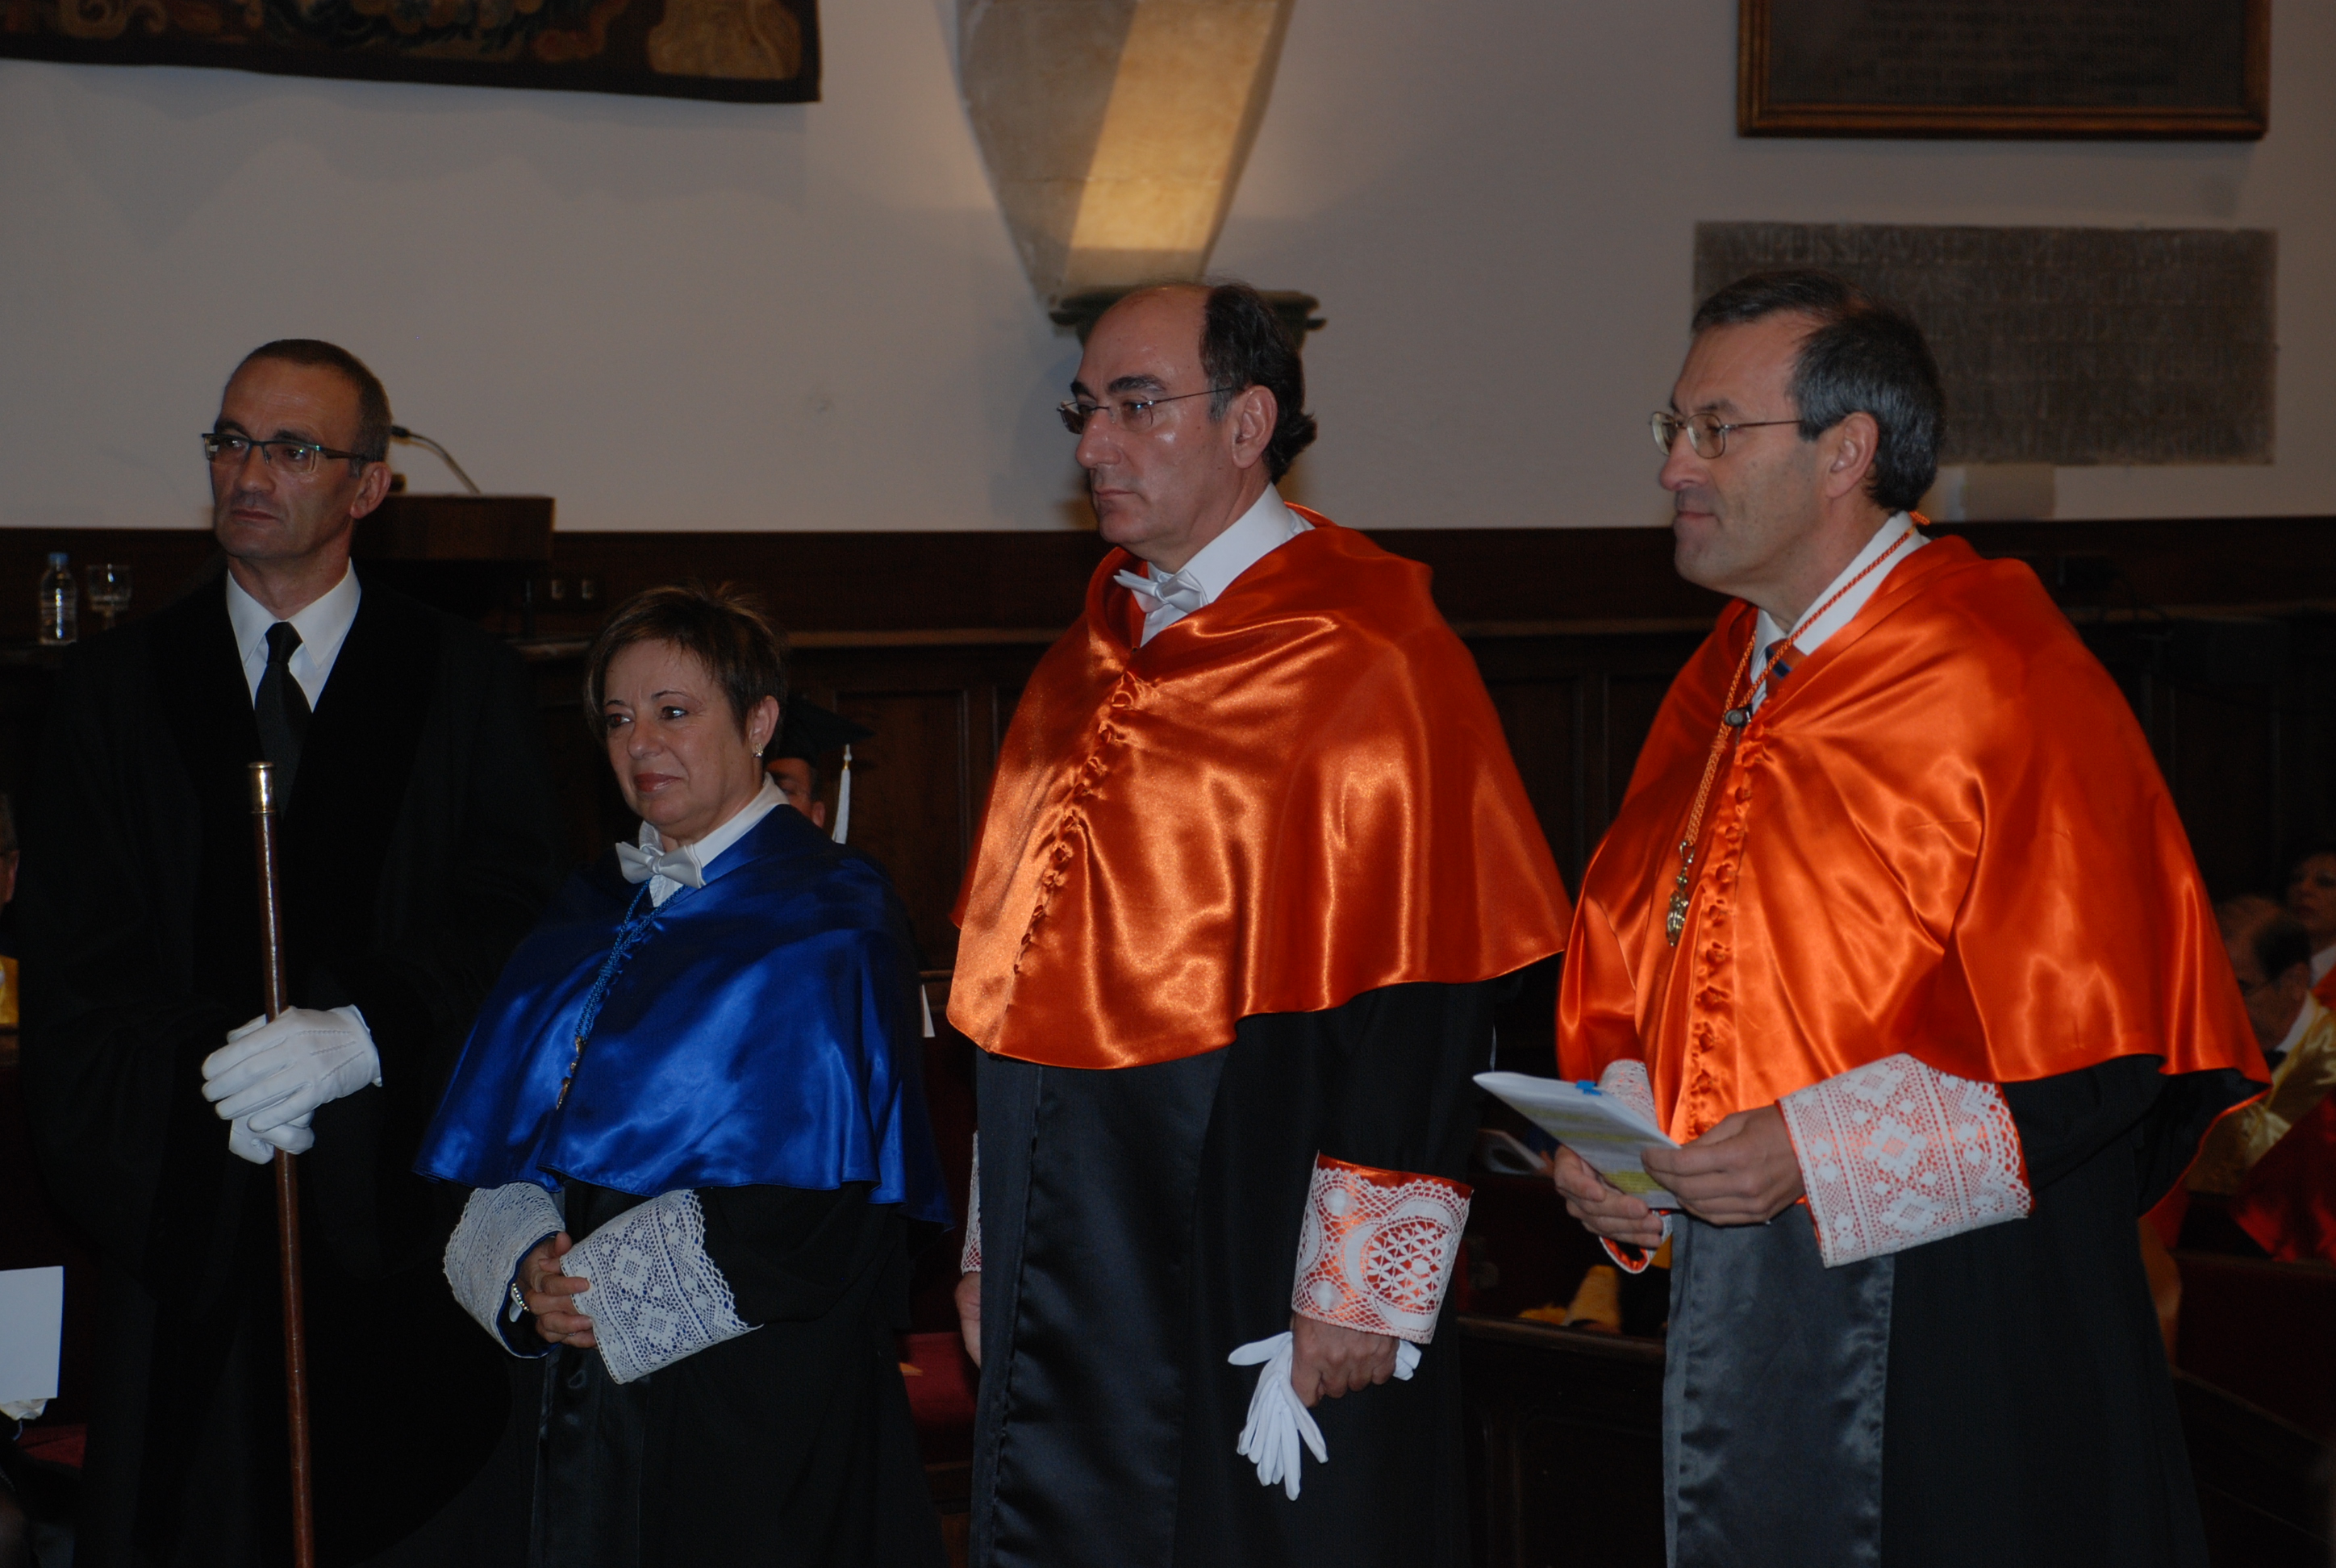 La Universidad de Salamanca nombra doctor honoris causa a Ignacio Galán